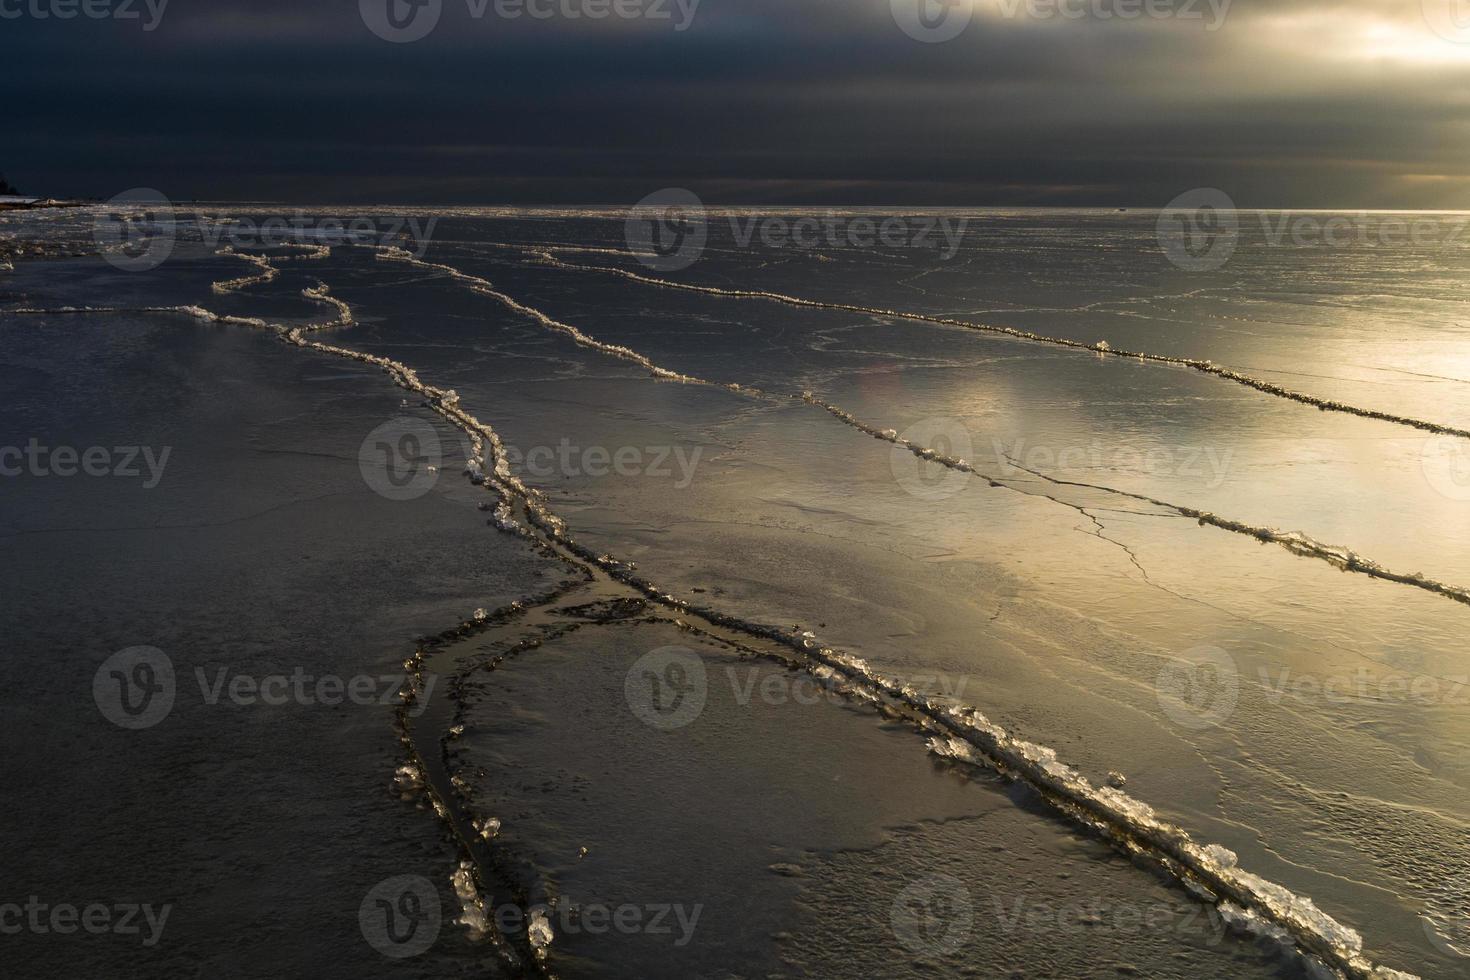 Baltisch zee kust met steentjes en ijs Bij zonsondergang foto